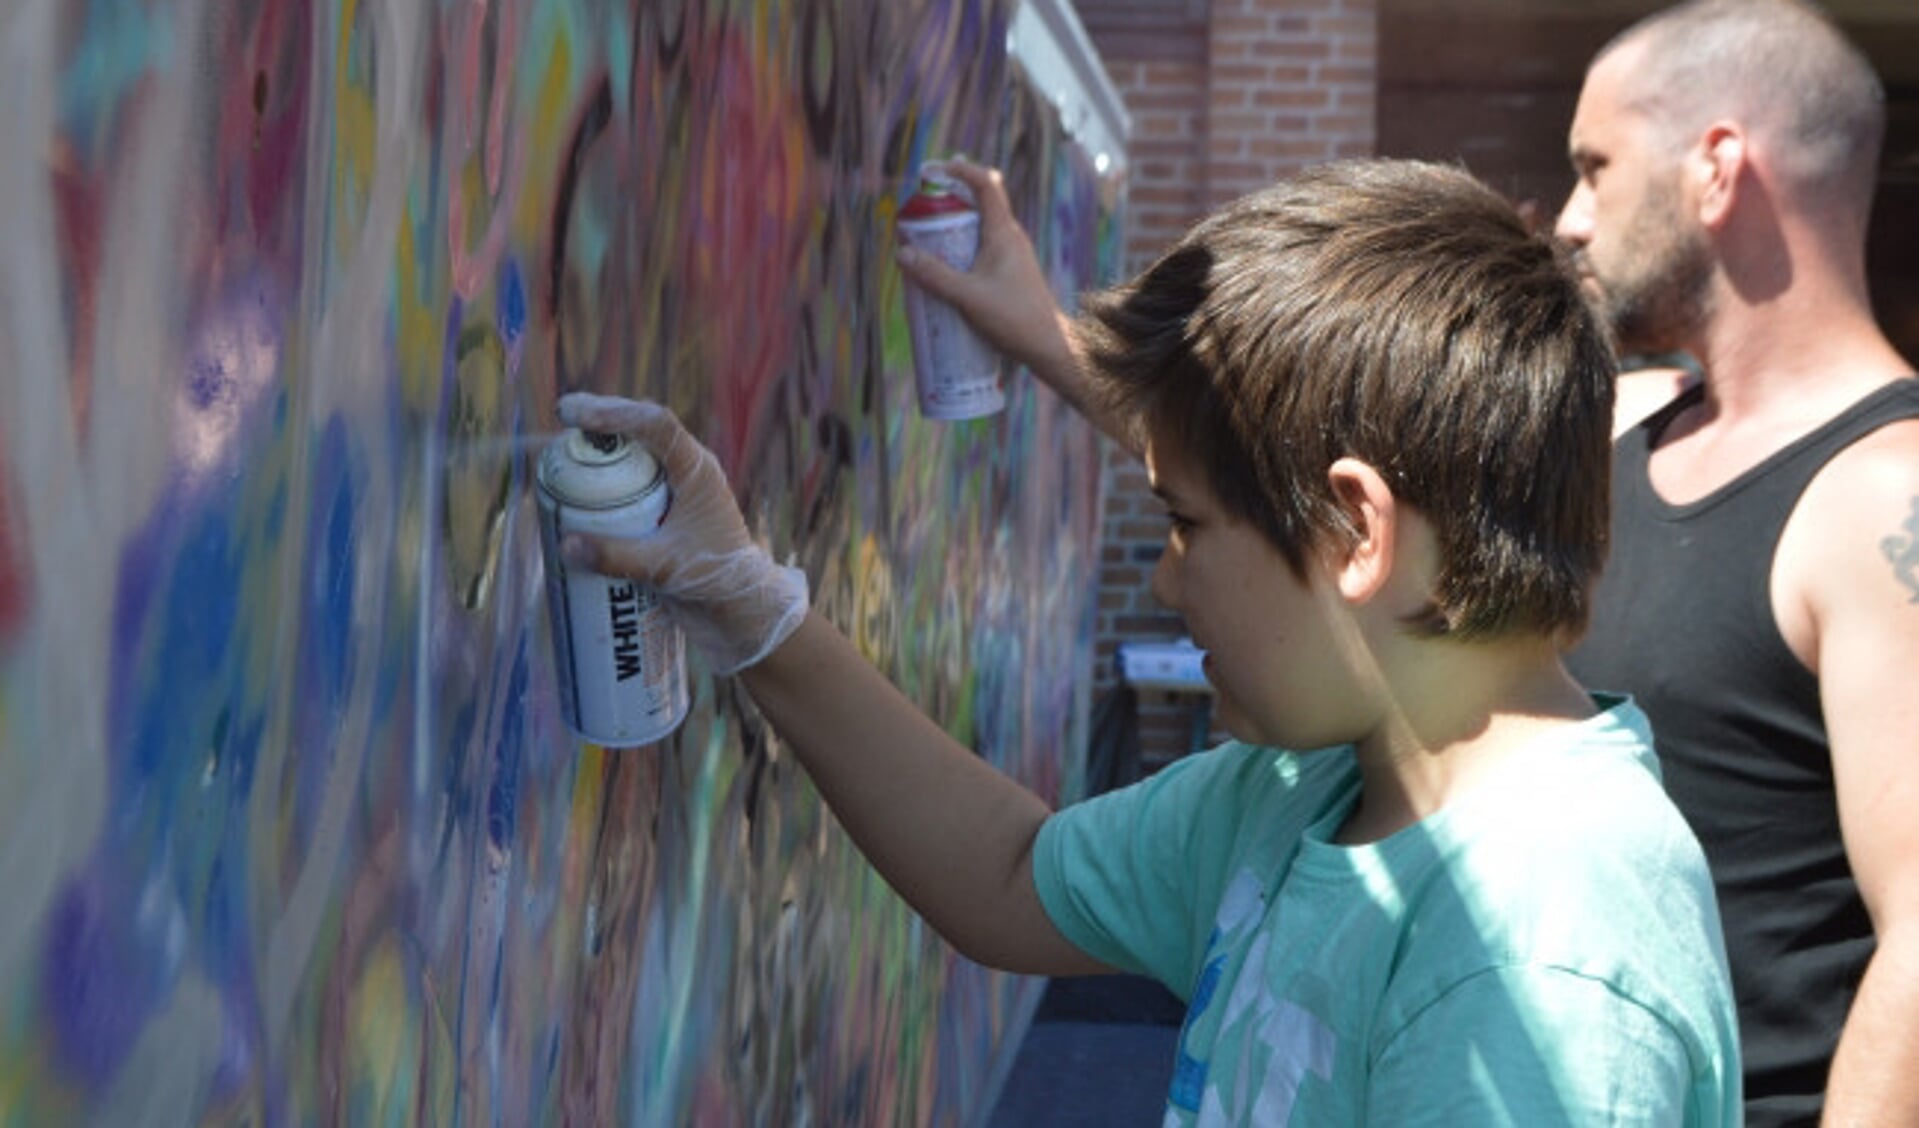  Jong en oud leefde zich uit tijdens de graffiti-workshop in Dronten.